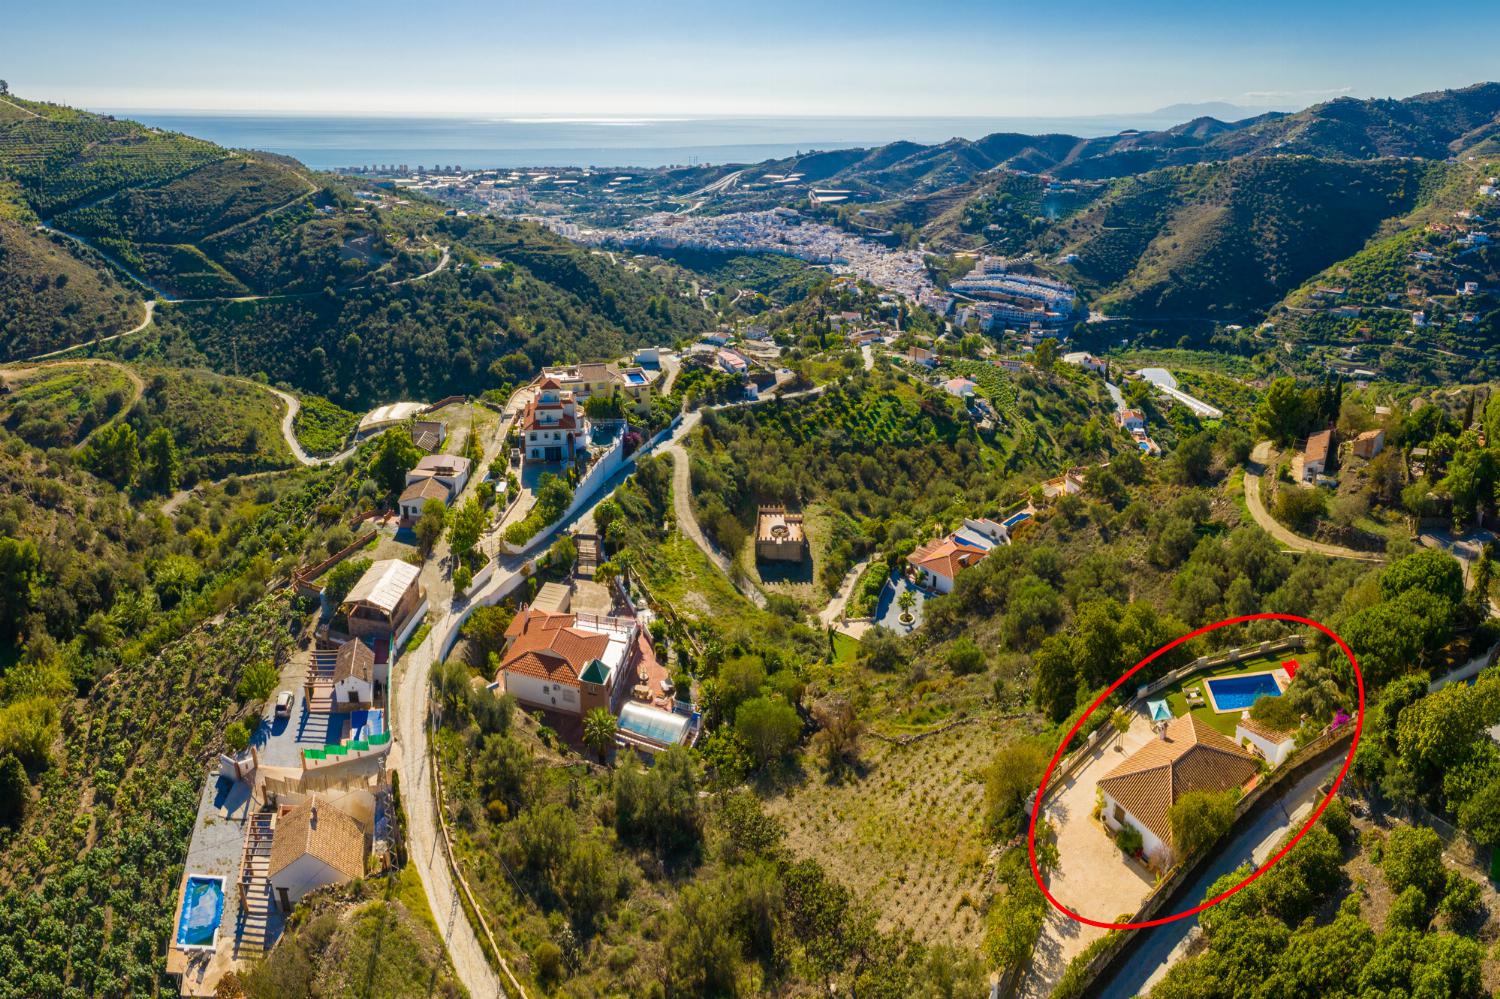 Aerial view showing location of Villa La Higuera